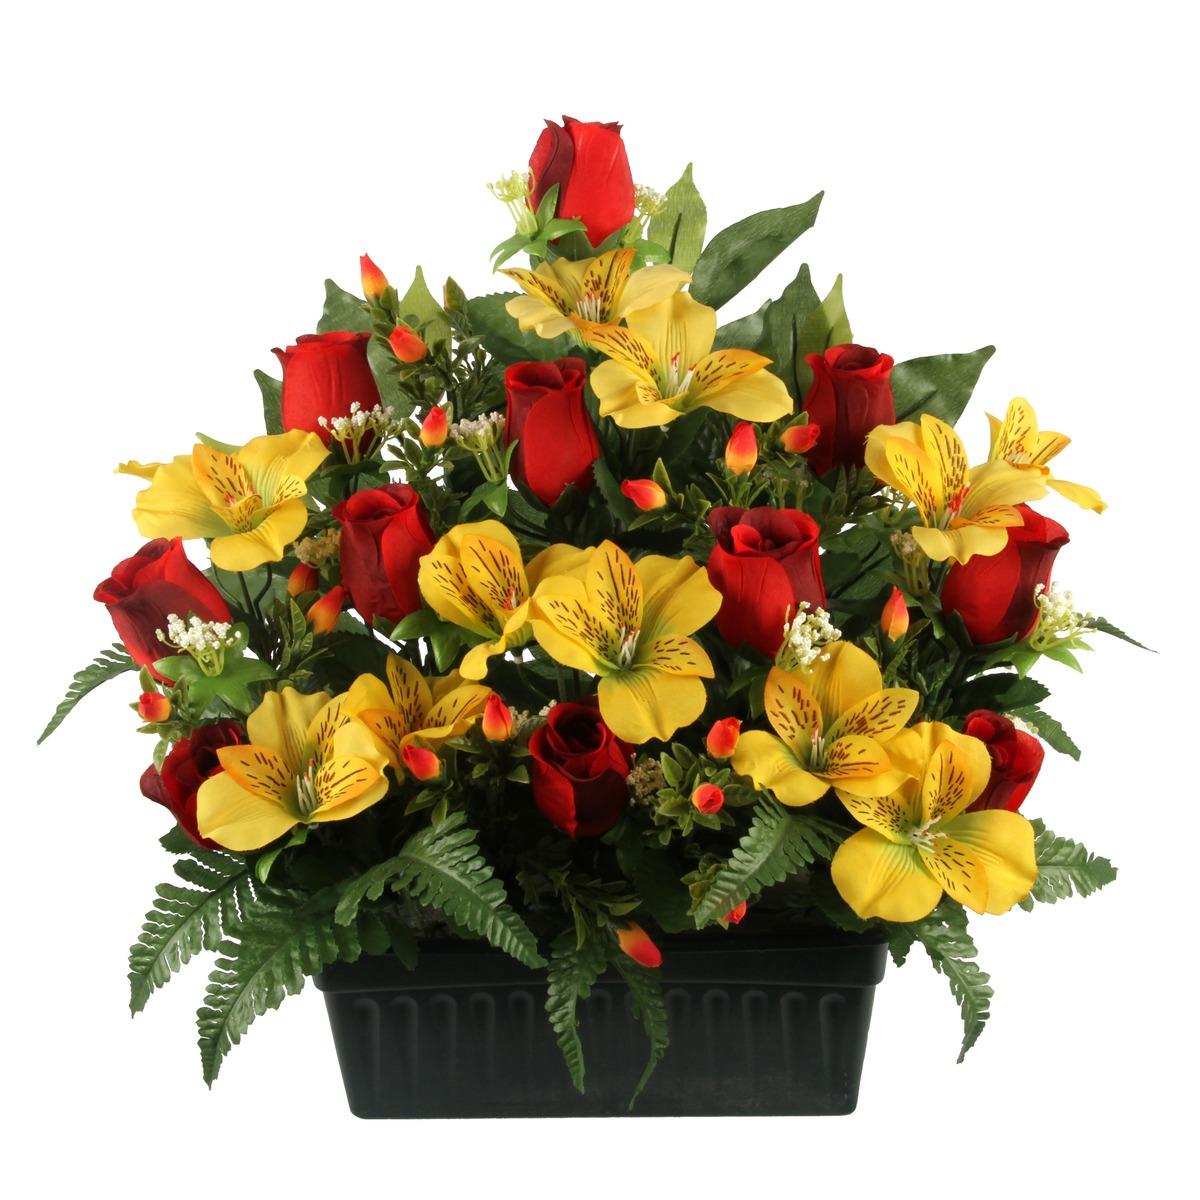 Jardinière boutons de roses + alstroemerias + feuilles + fougères - Hauteur 42 cm - Différents modèles